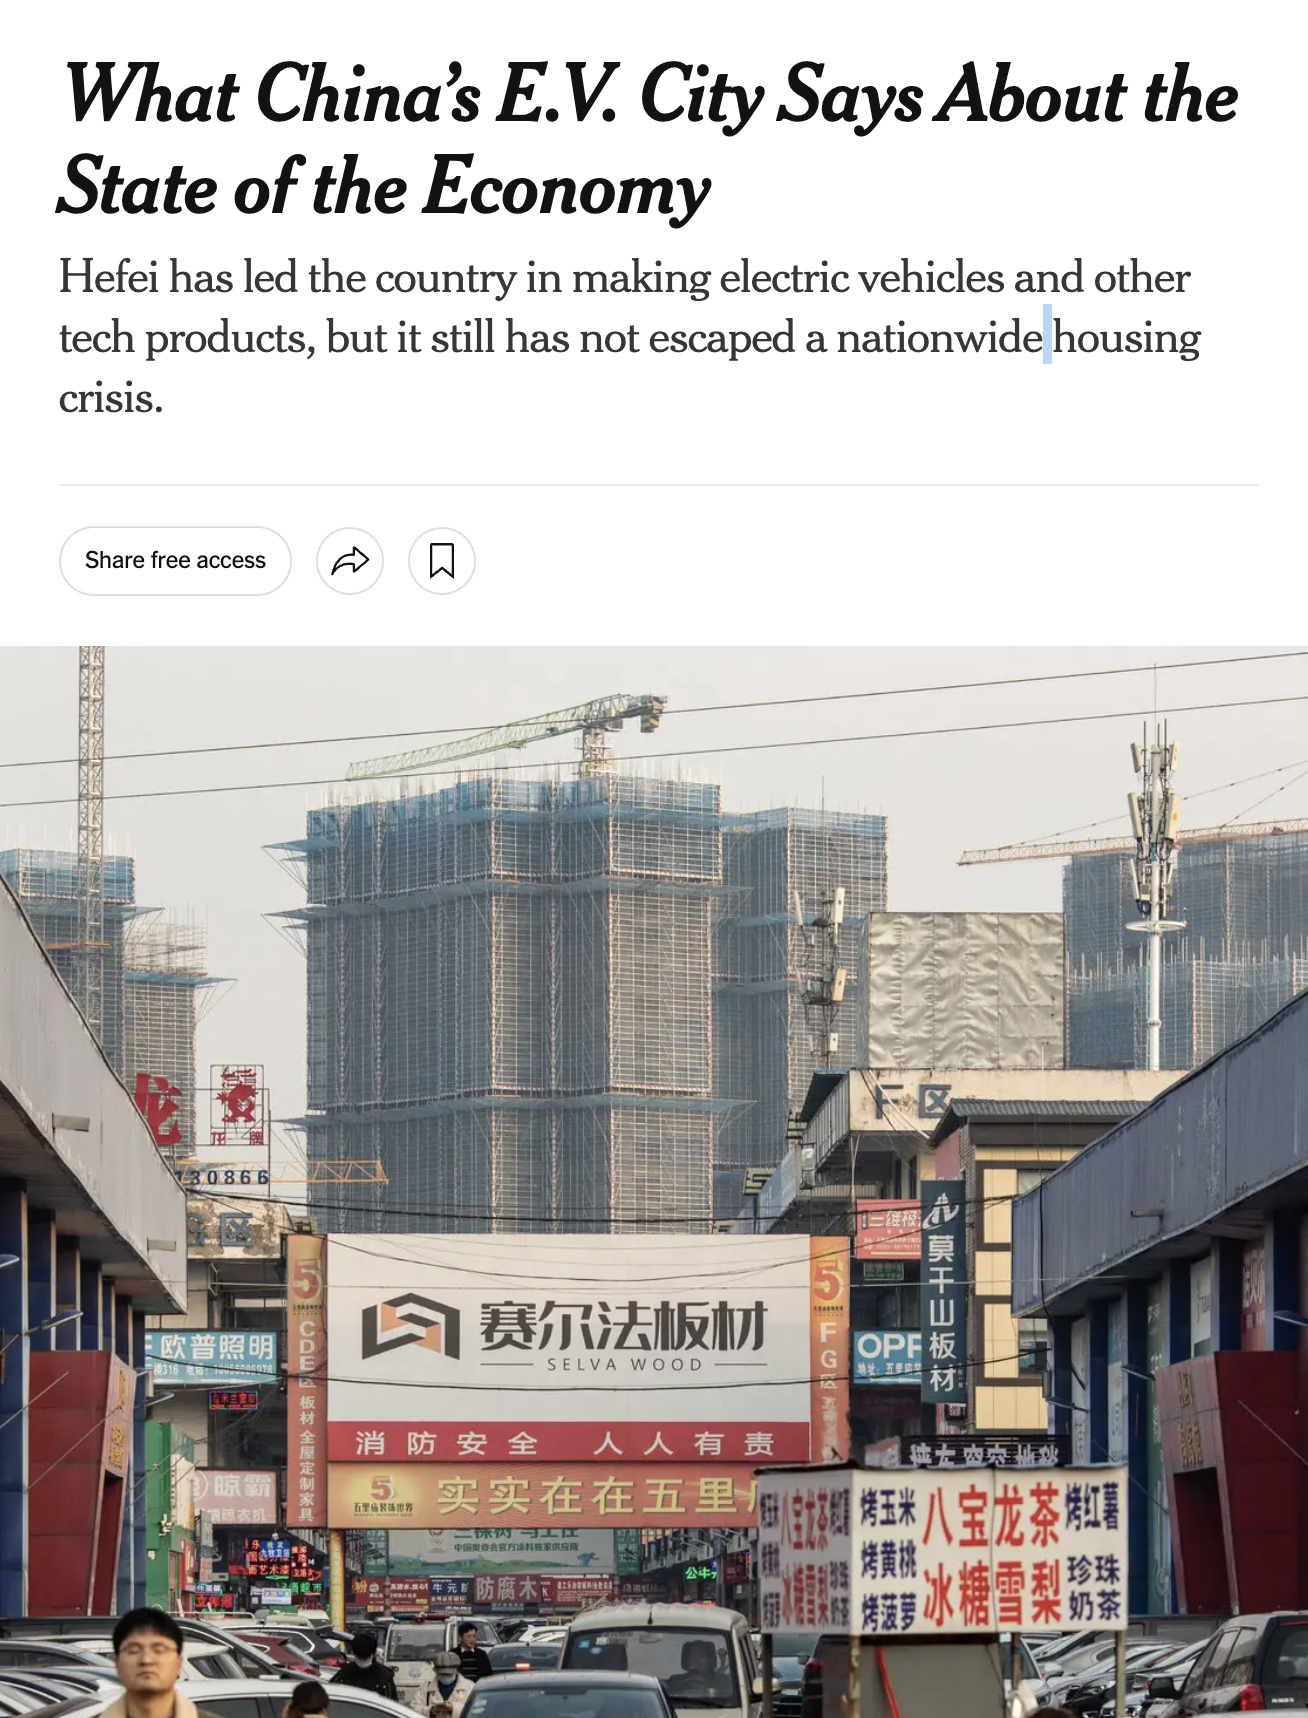 중국 허페이시가 말하는 중국경제의 현주소